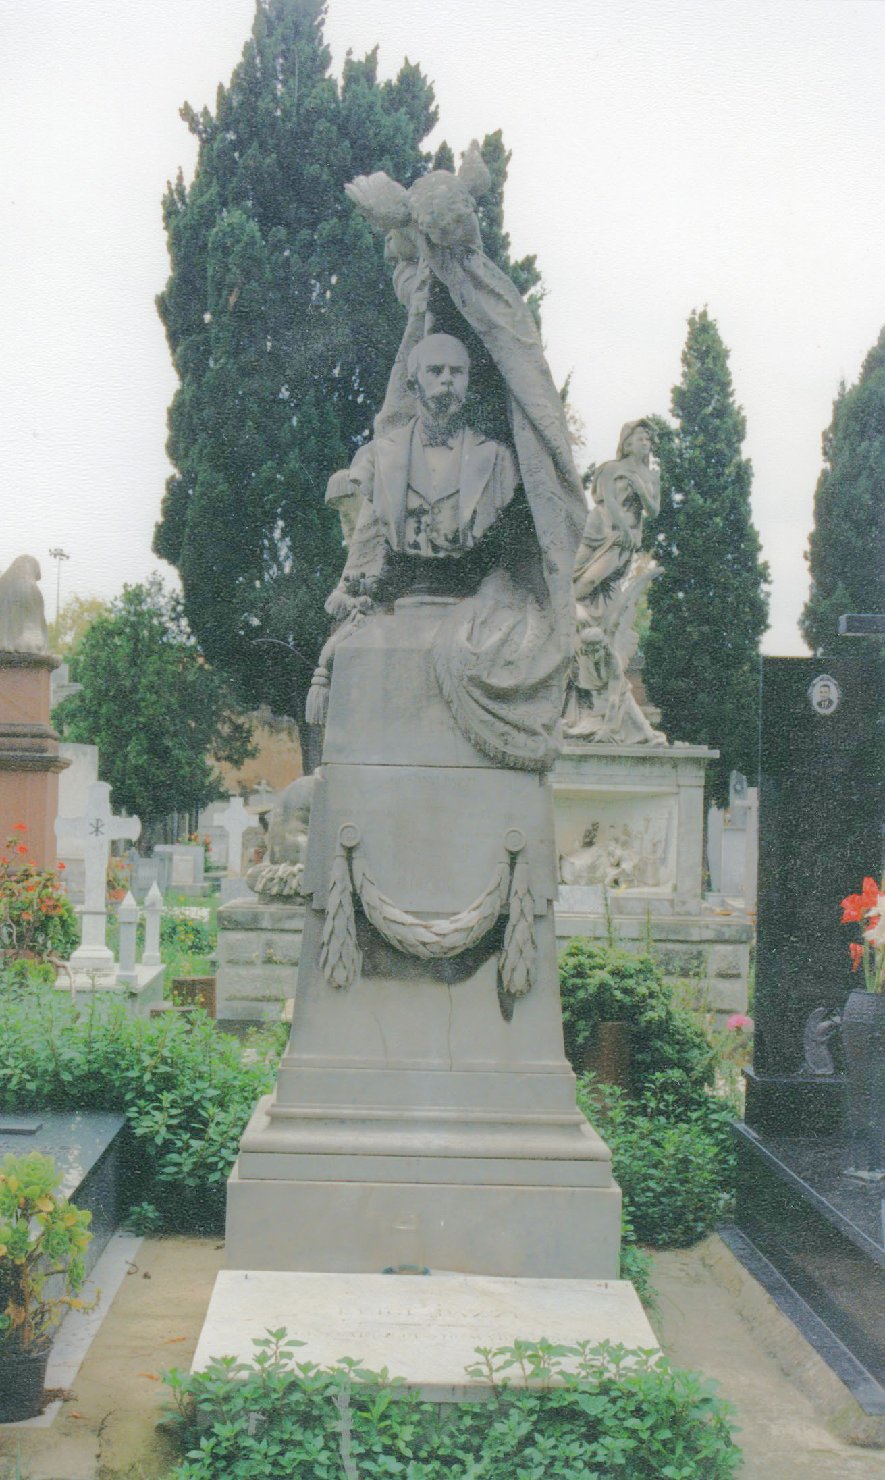 Ritratto di giovanni pazzi, busto ritratto d'uomo (monumento funebre)